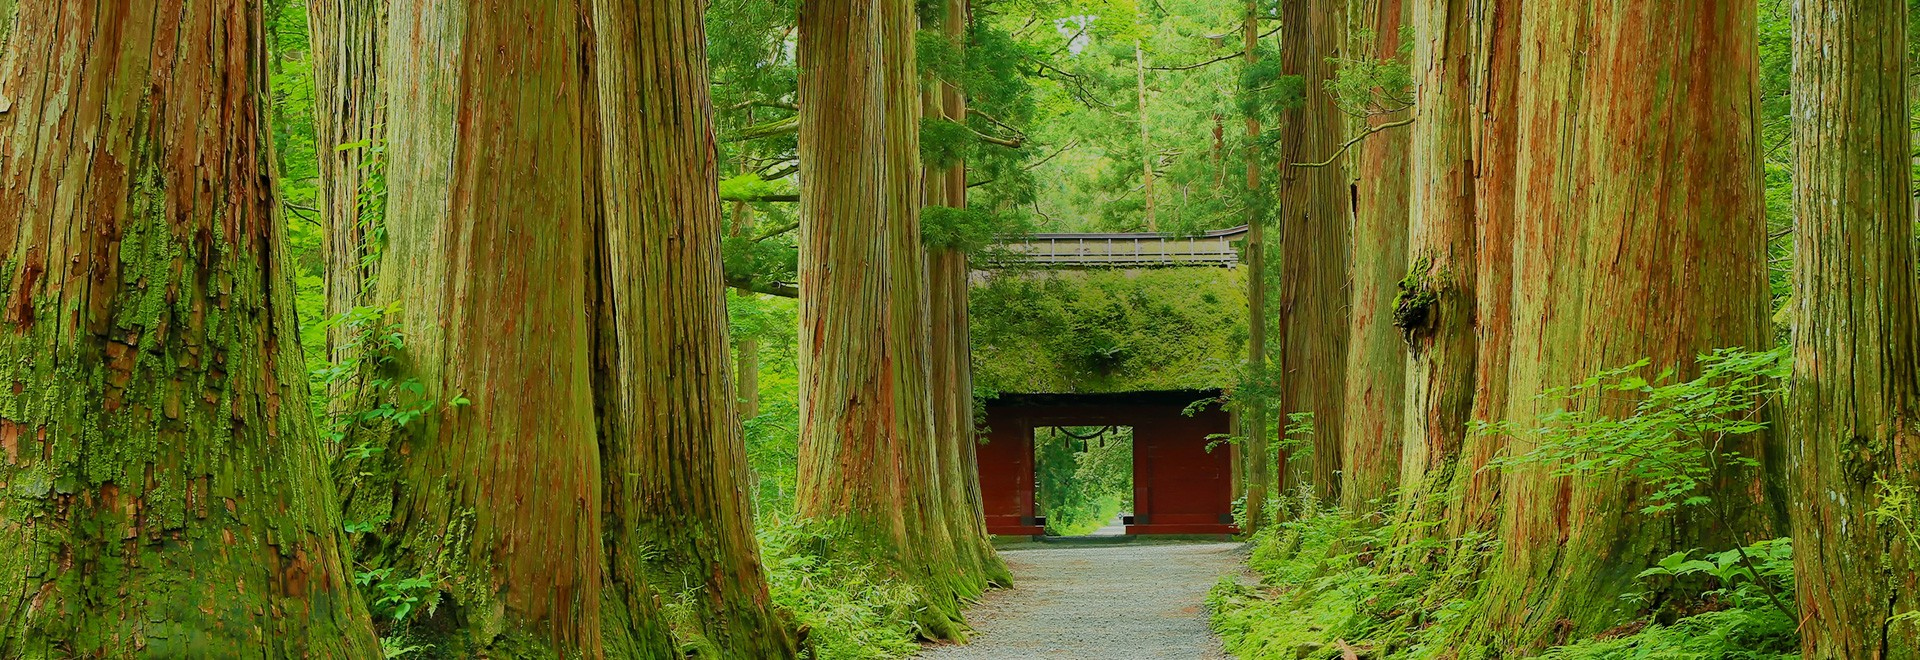 계절에 따라 일본의 아름다움을 느낄 수 있는 "신슈"의 현관, 나가노역 젠코지구치에서 도보 2분 거리의 입지